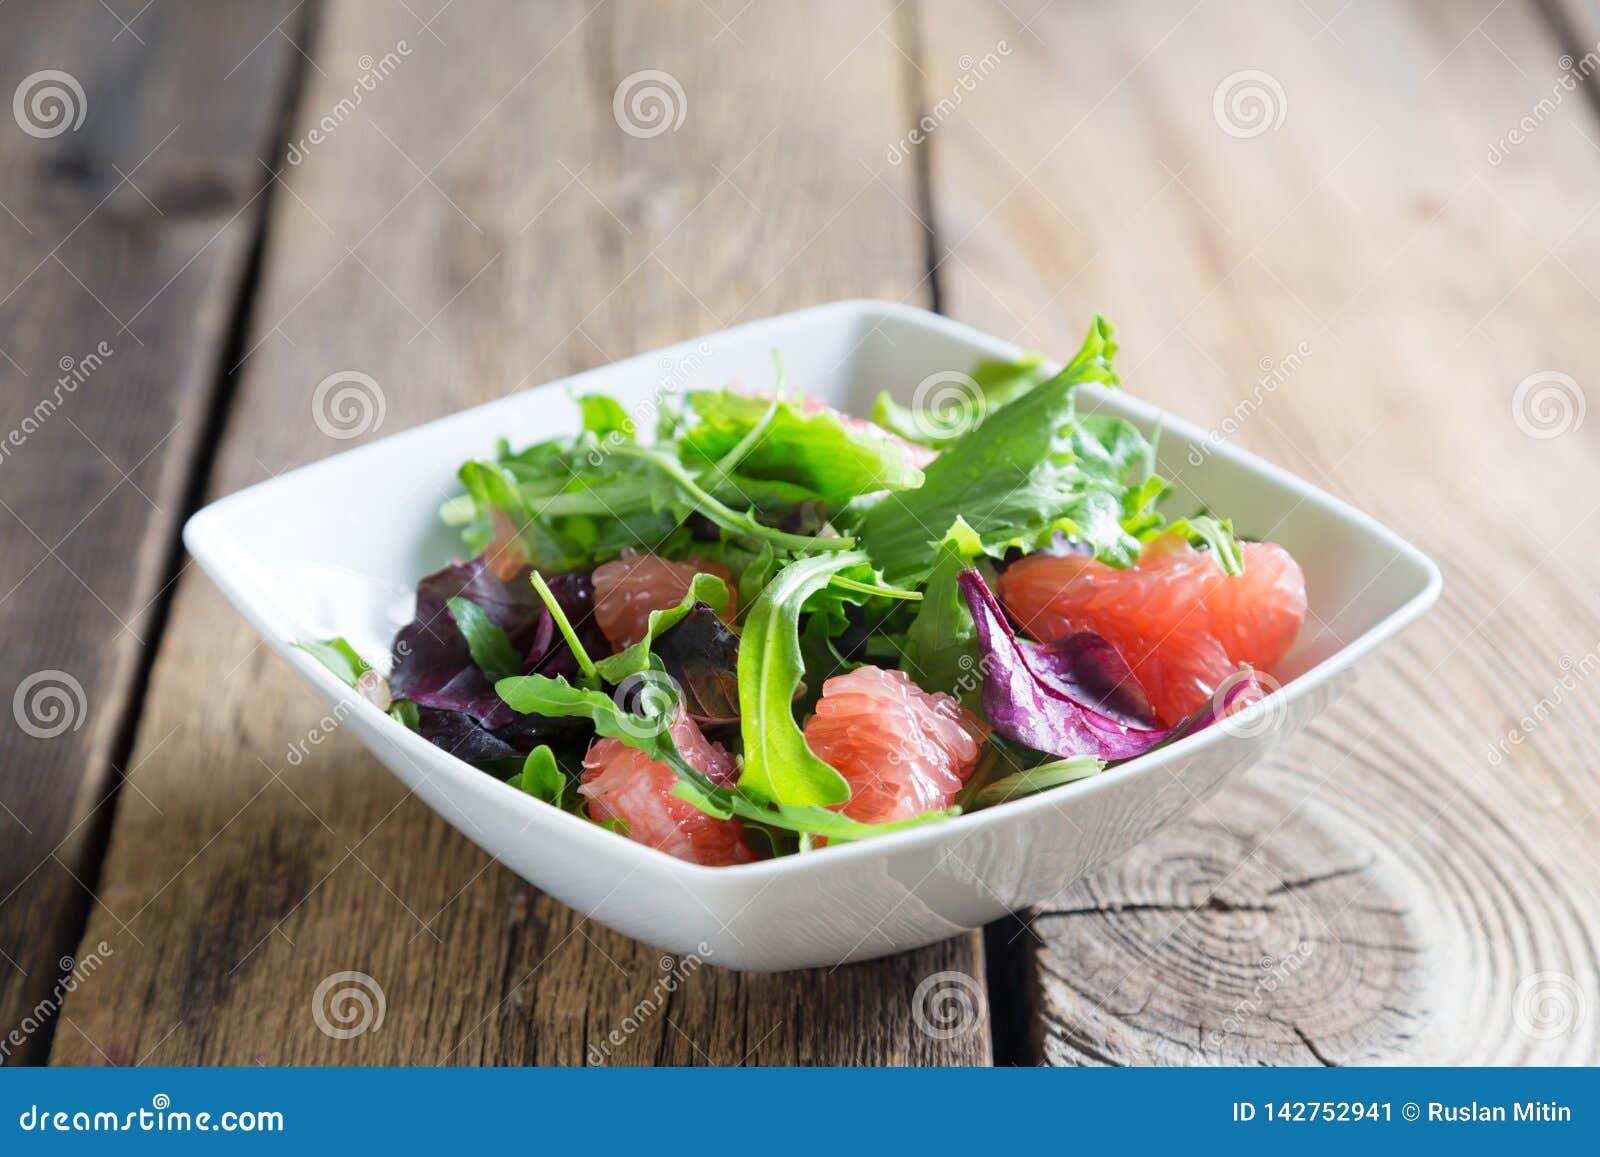 Frischer Salat Mit Pampelmusenmasse Stockbild - Bild von organisch ...